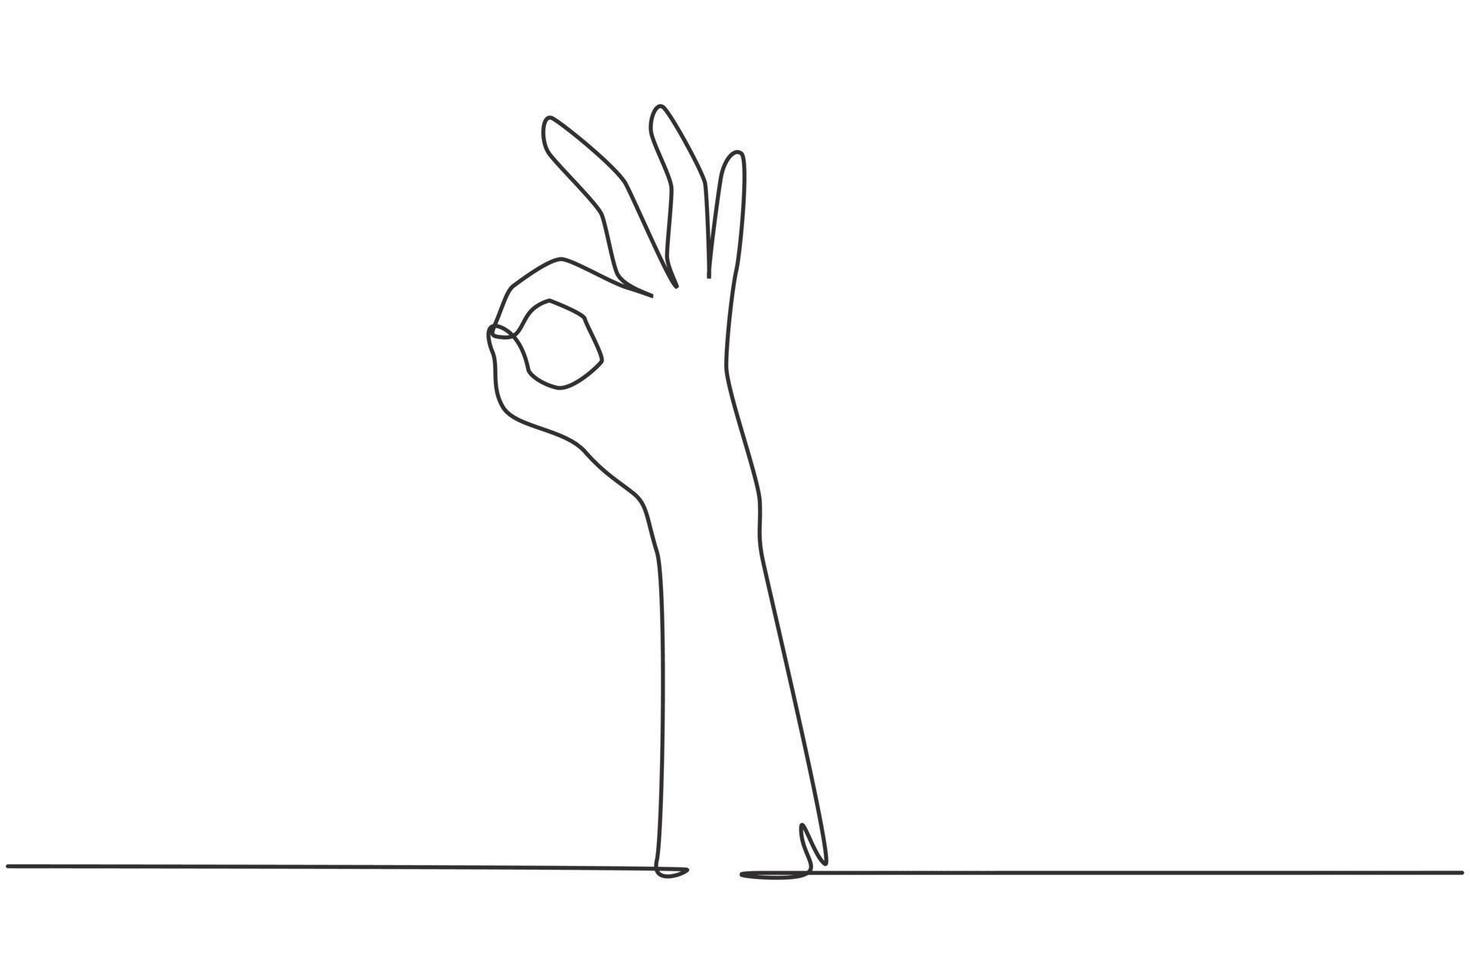 einzelne eine strichzeichnungshand, die eine ok oder perfekte geste zeigt. Nummer drei Hand zählen. Zahlen zählen lernen. nonverbale Zeichen oder Symbole. durchgehende Linie zeichnen Design-Grafik-Vektor-Illustration vektor